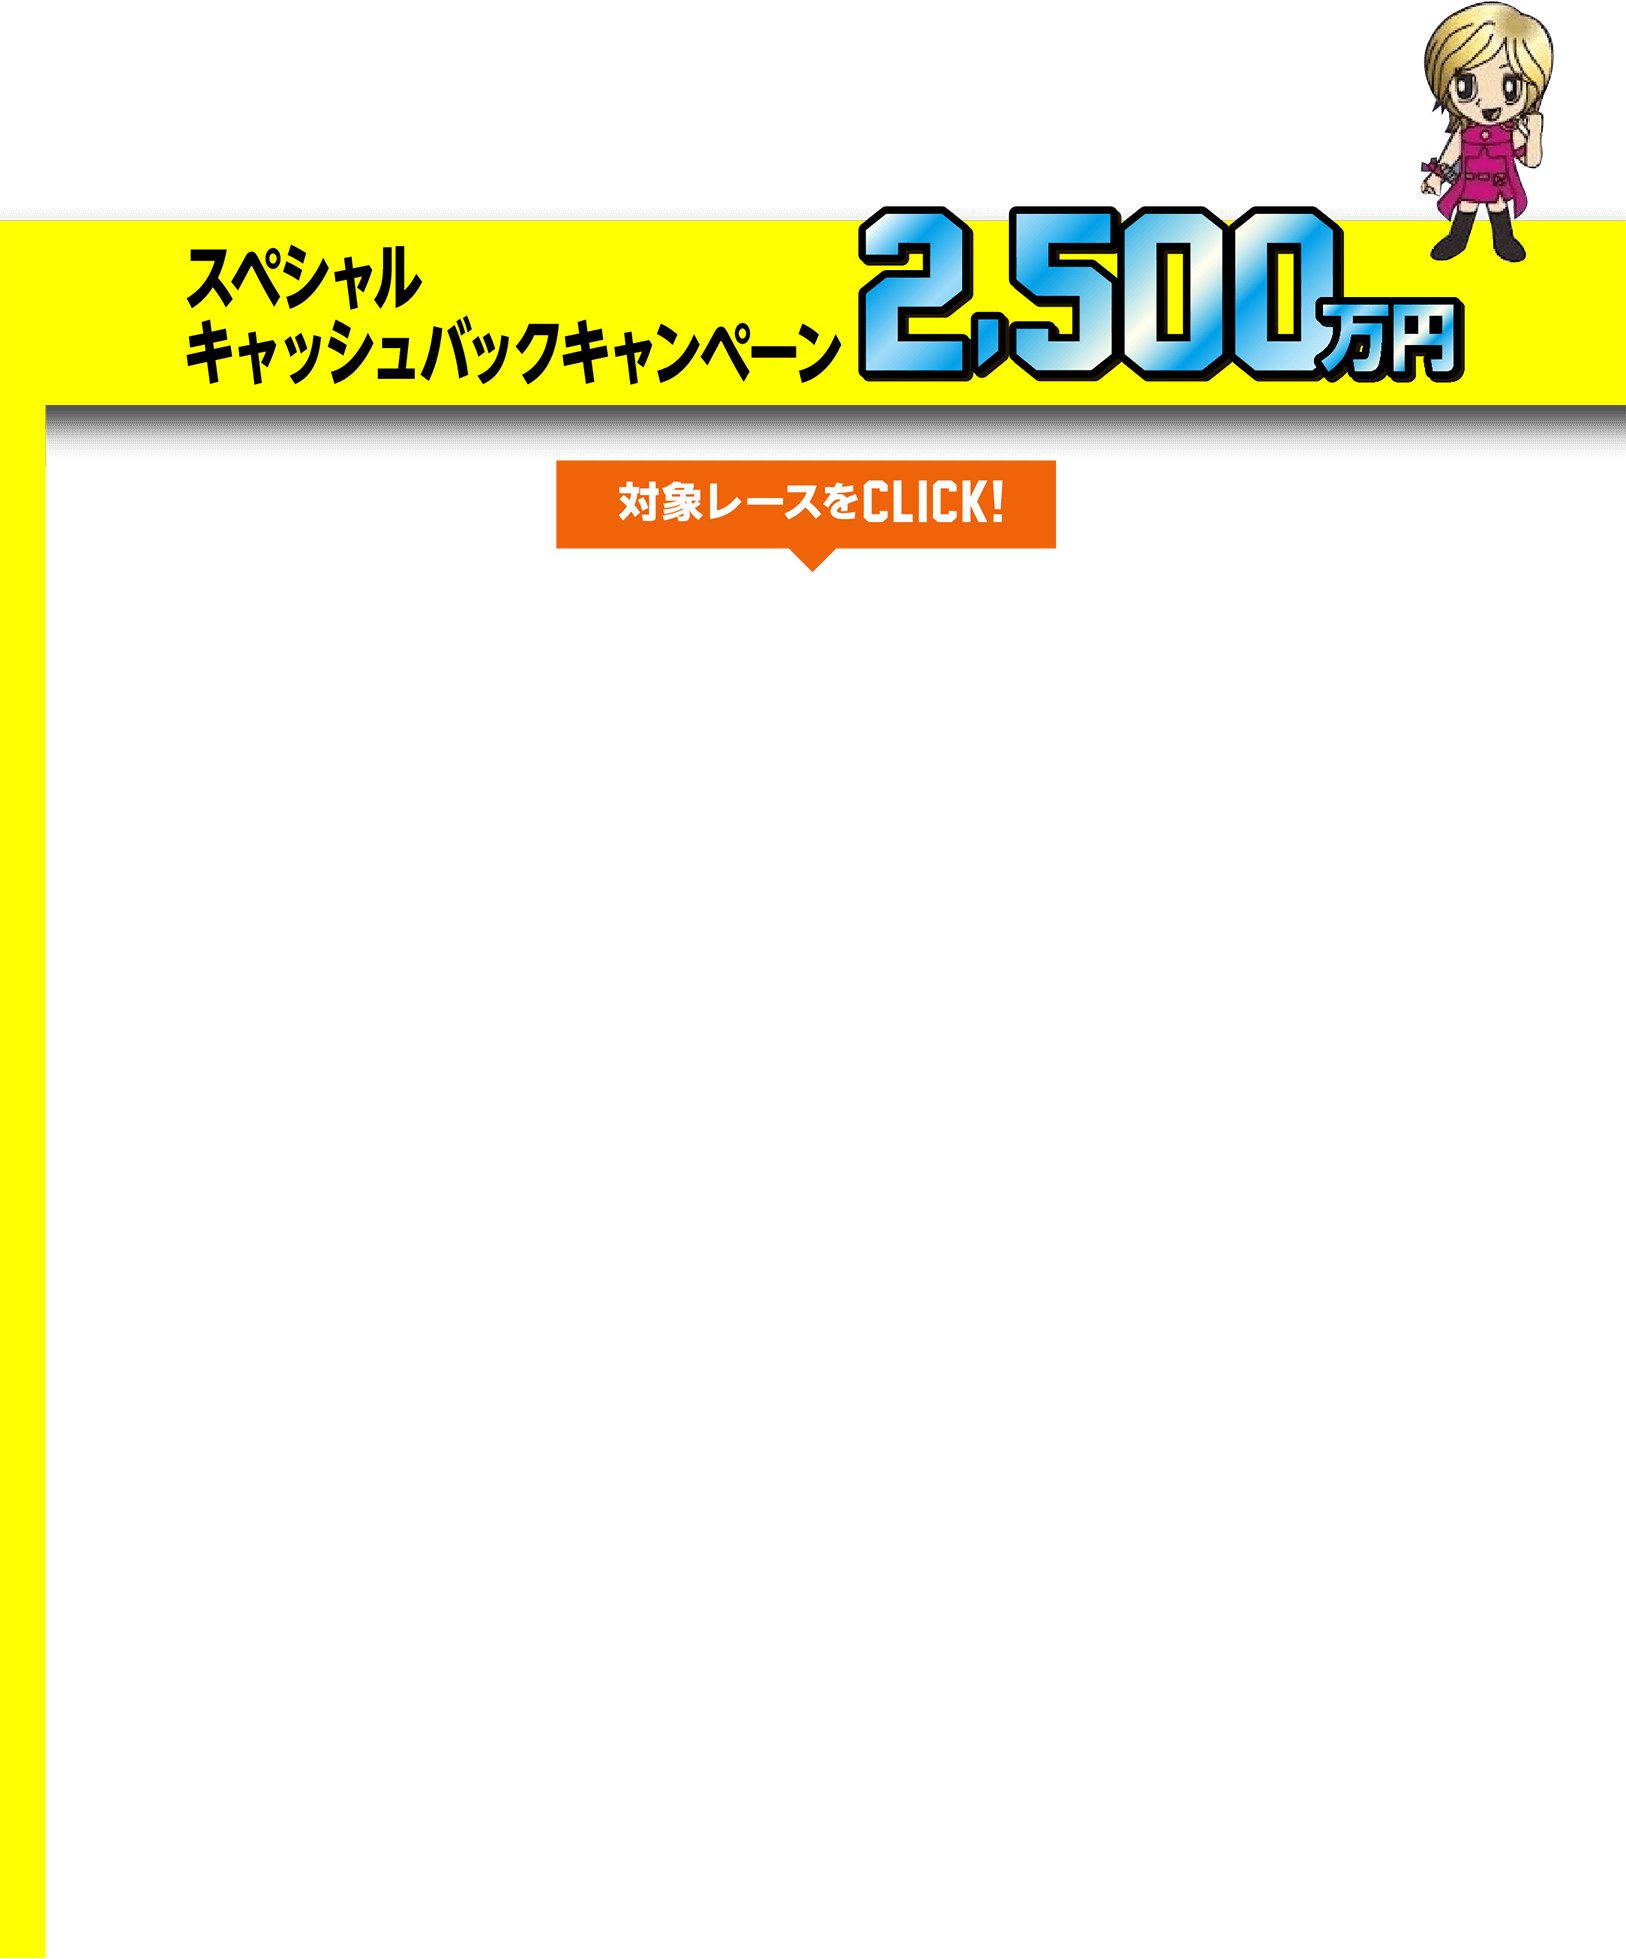 スペシャルキャッシュバックキャンペーン 2,500万円